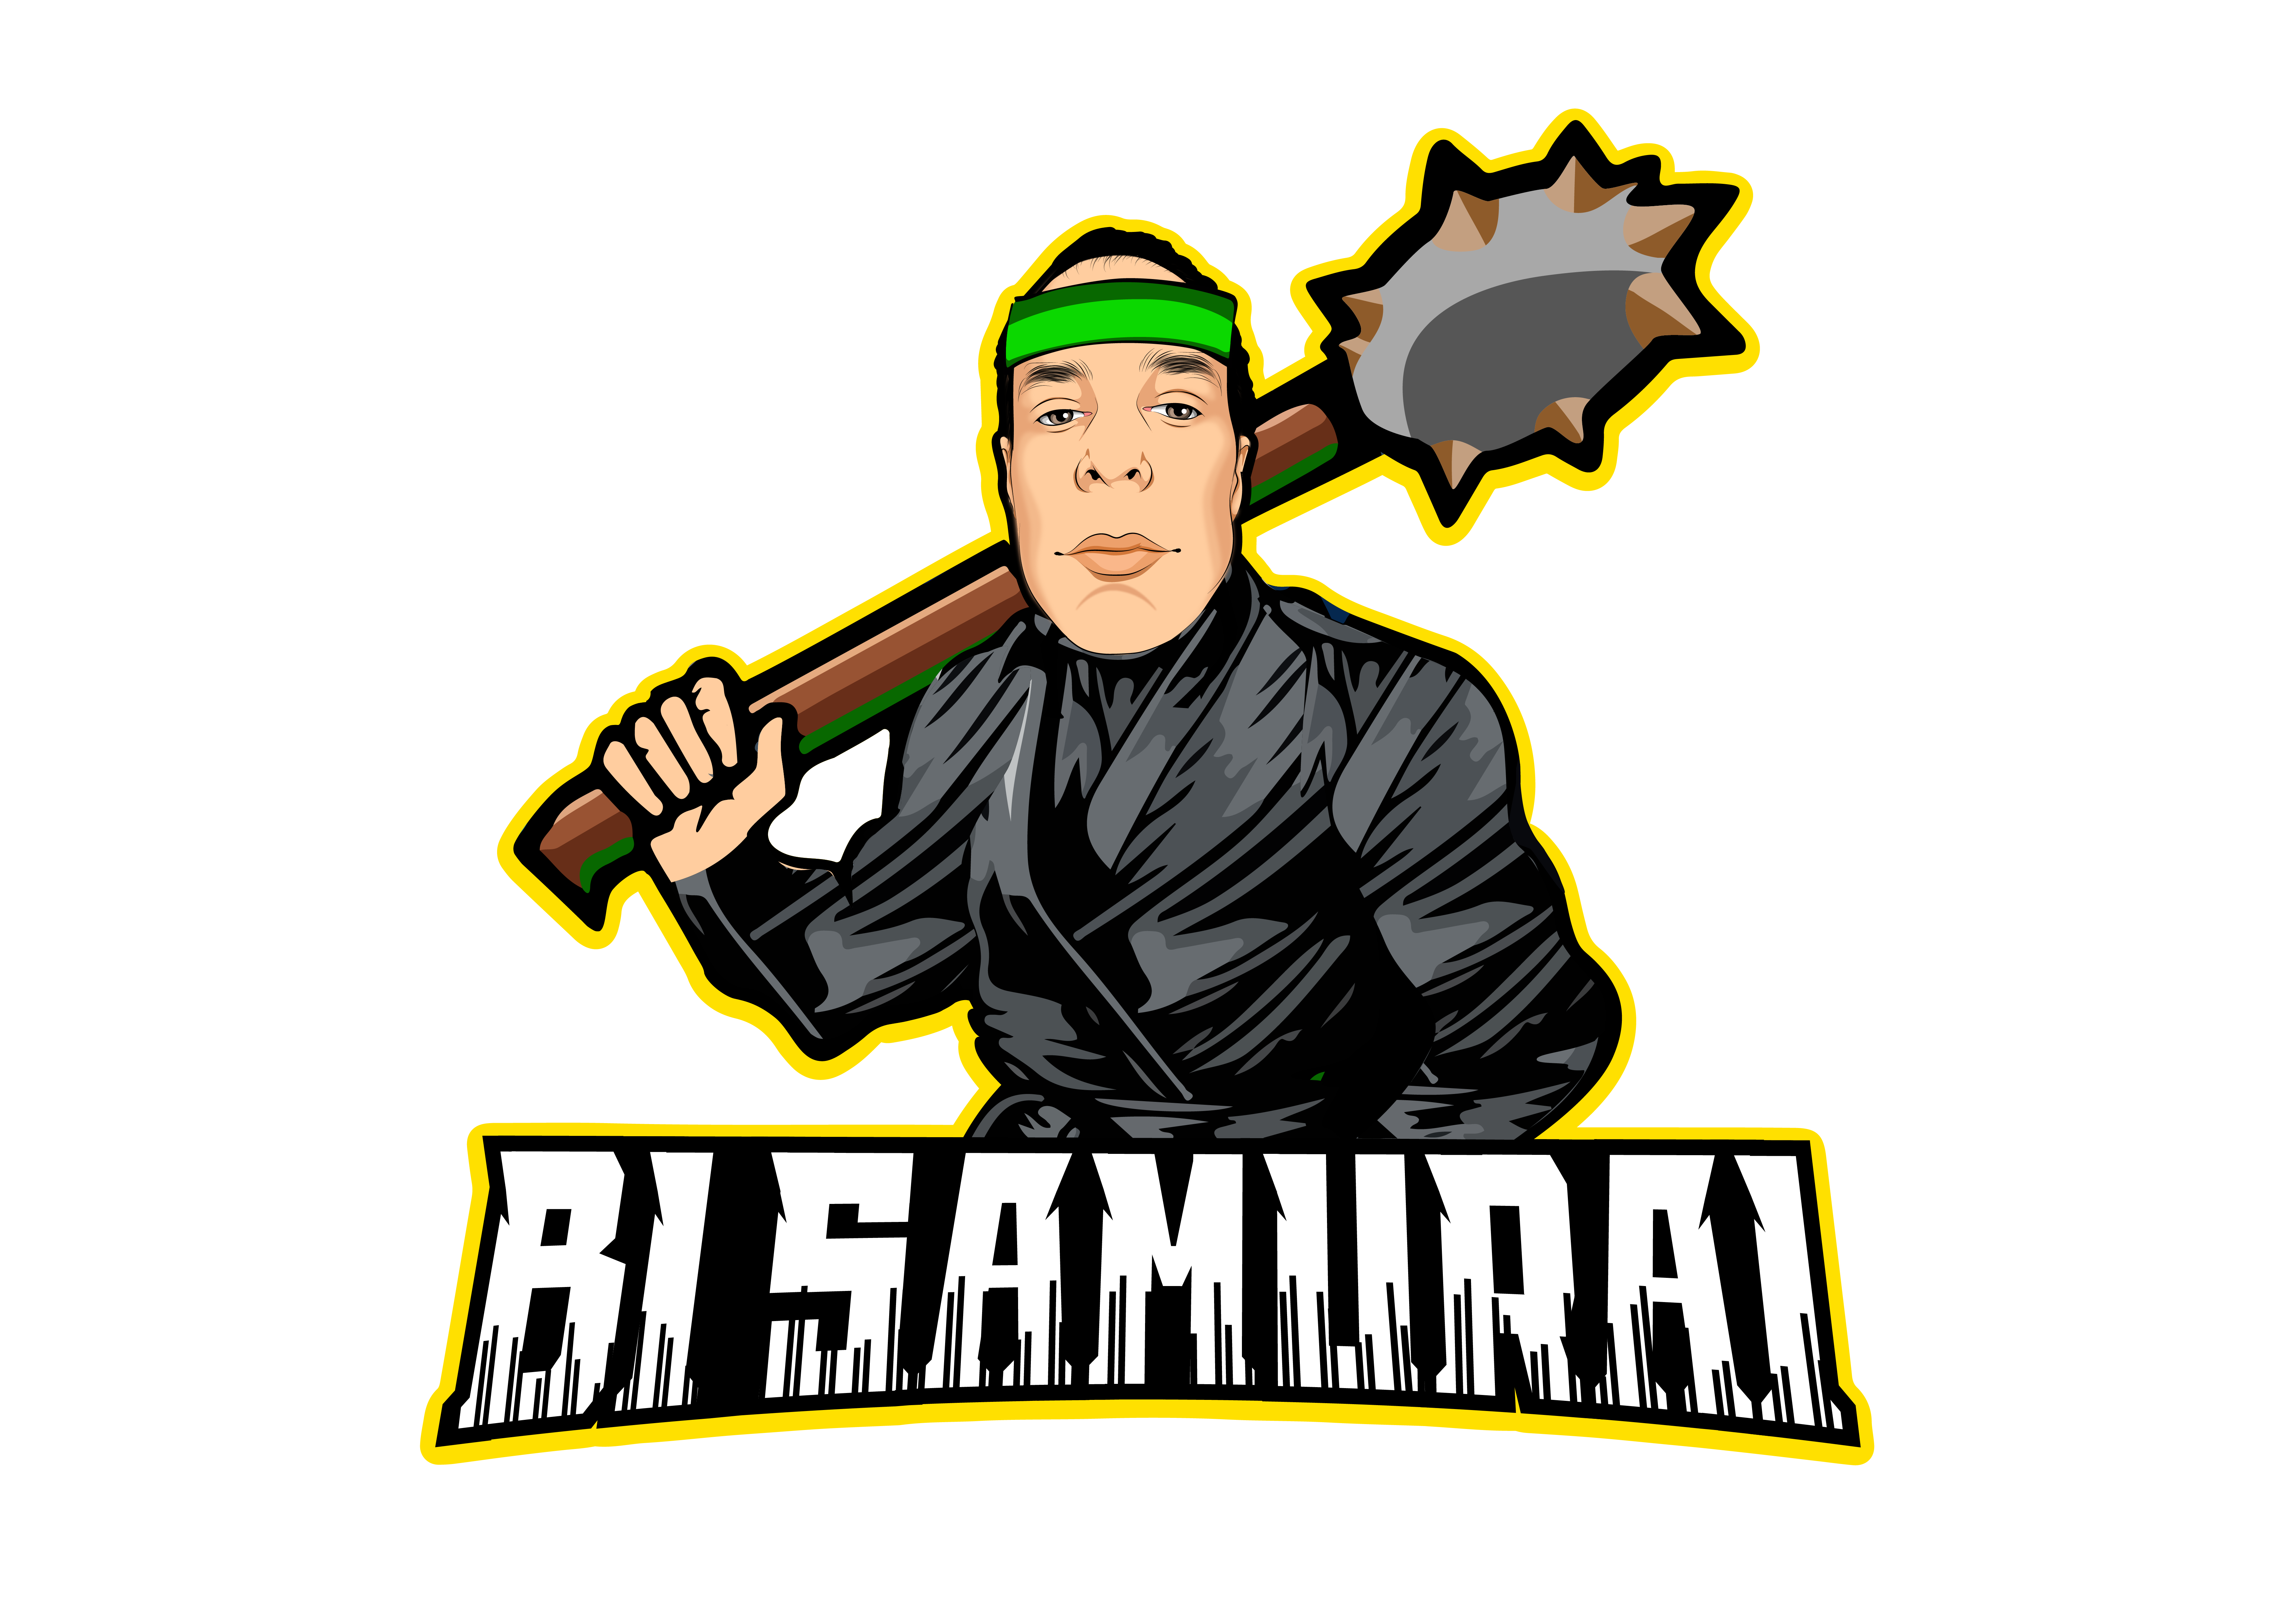 BI Samurai George